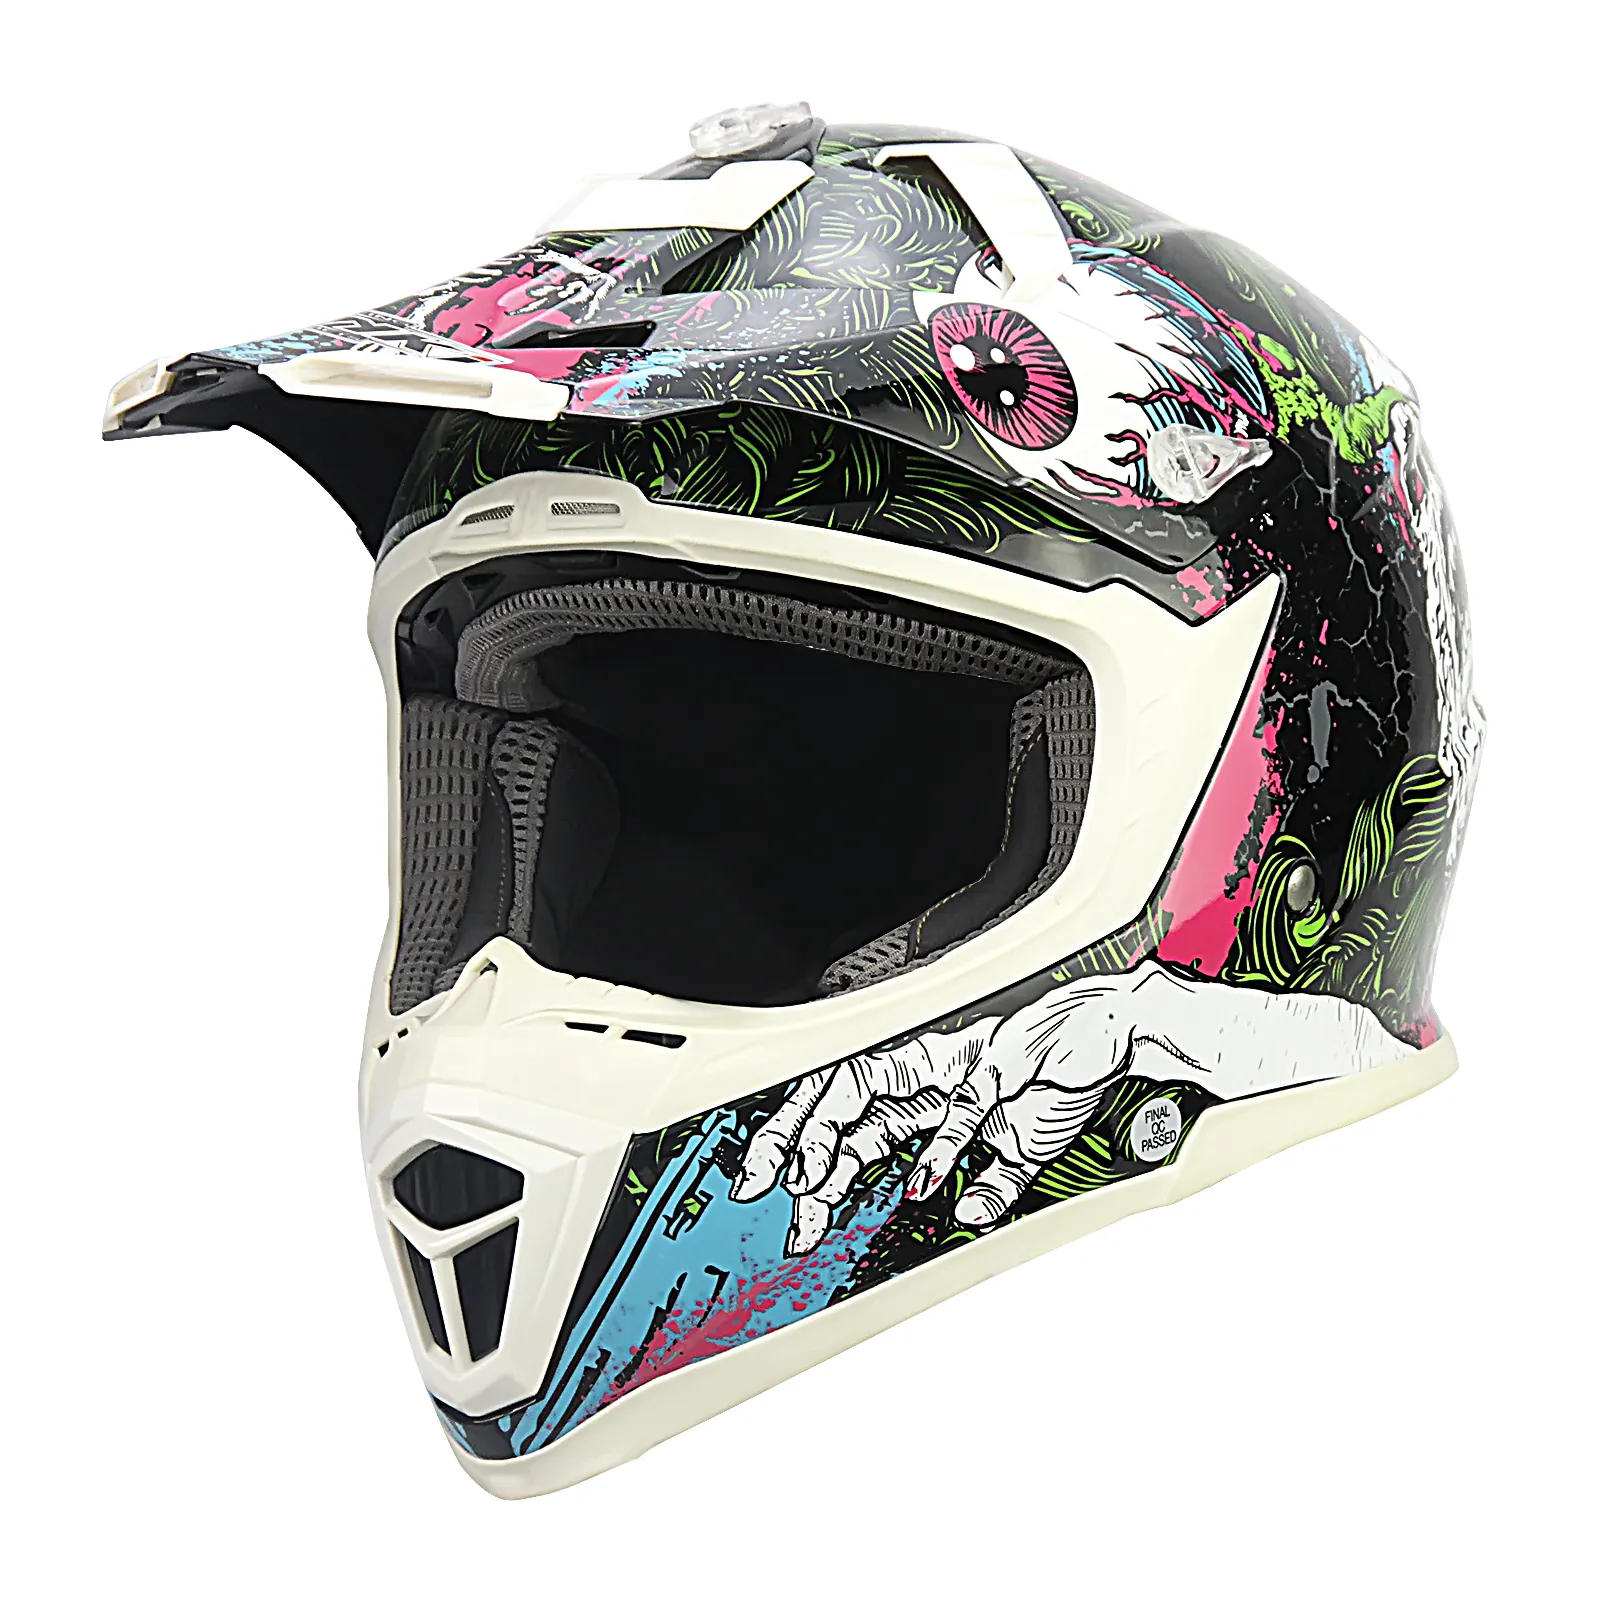 Hmx316 cascos gorras para motos equitacion casque de motocross אופנוע אור הקסדה